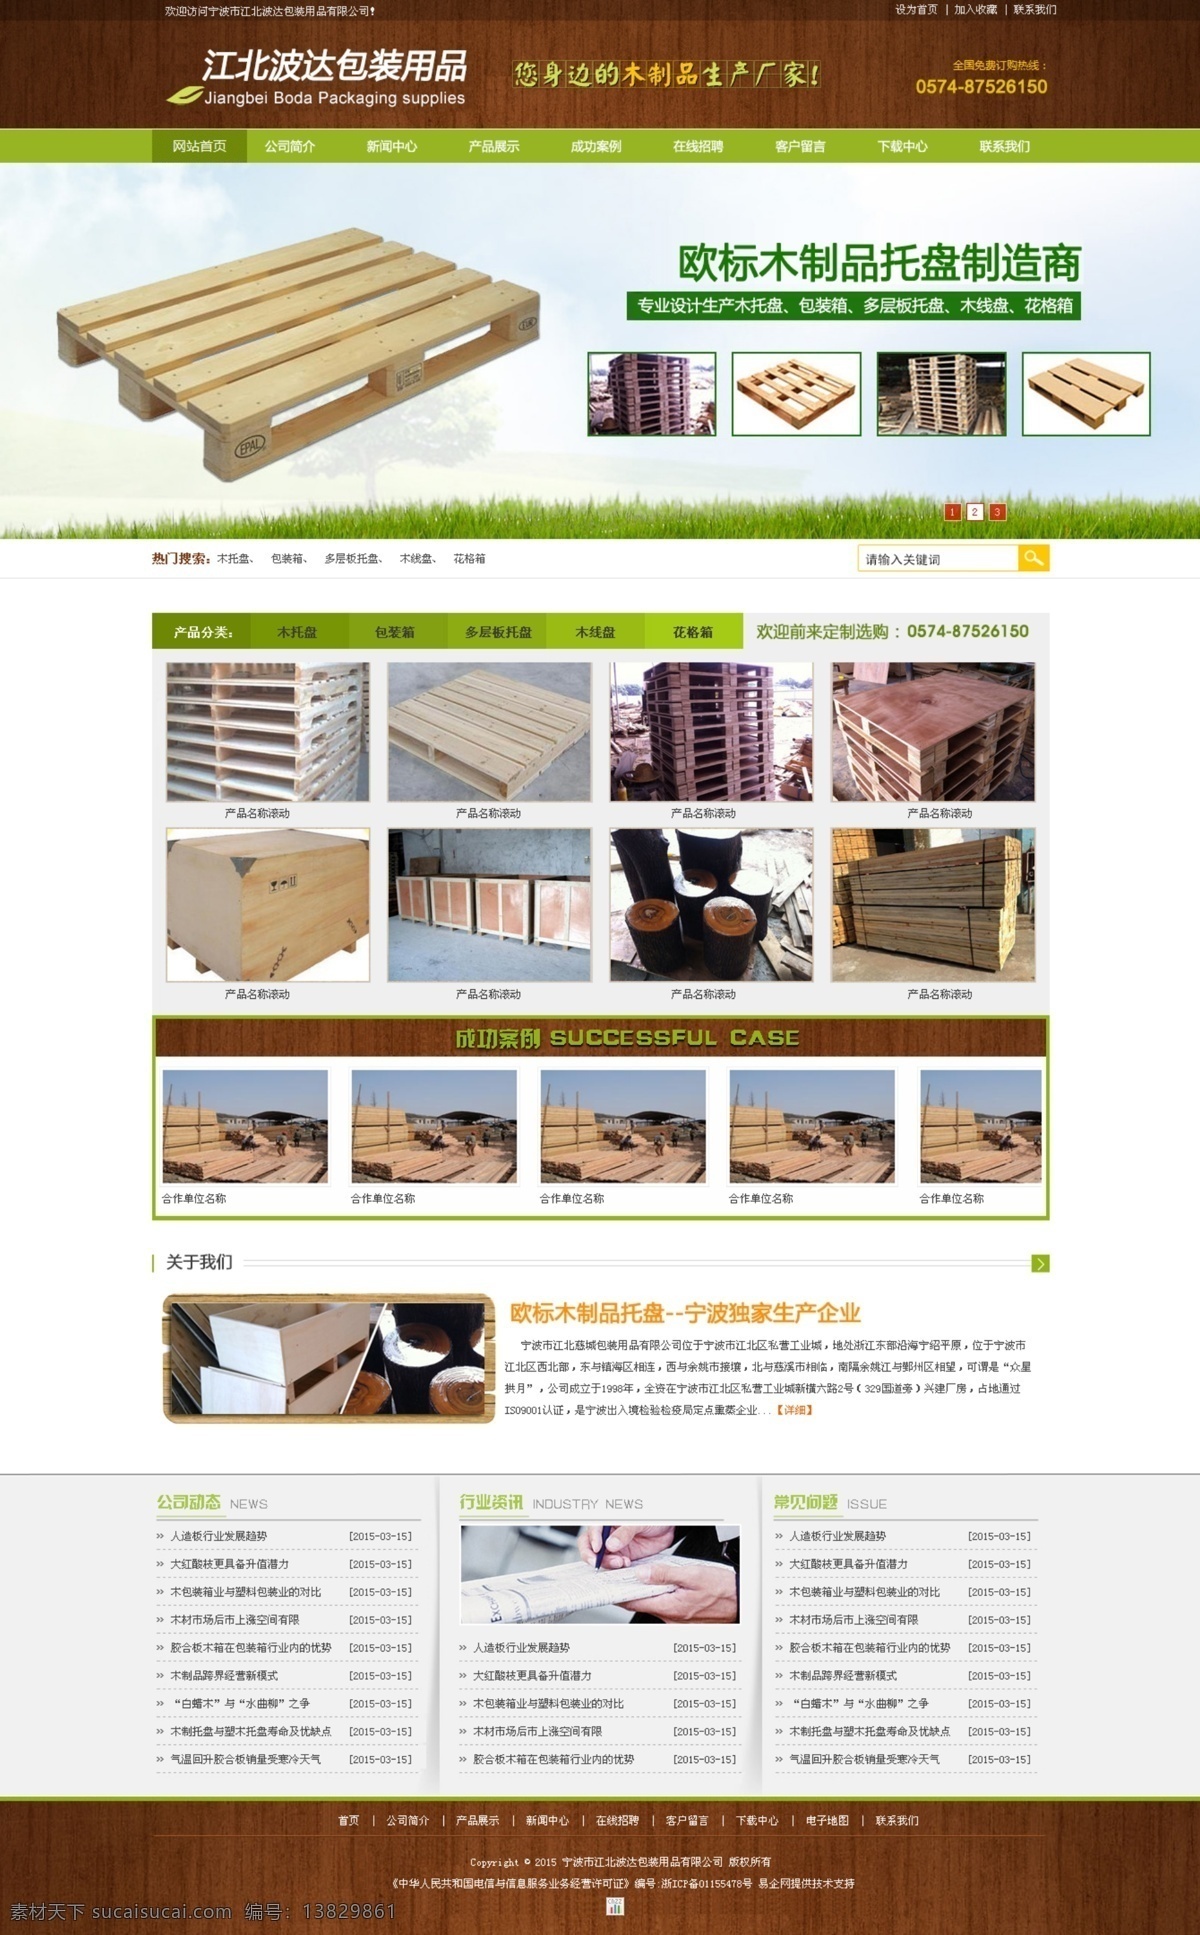 江北 波达 包装 有限公司 包装公司 木制品包装 木材公司 原创设计 原创网页设计